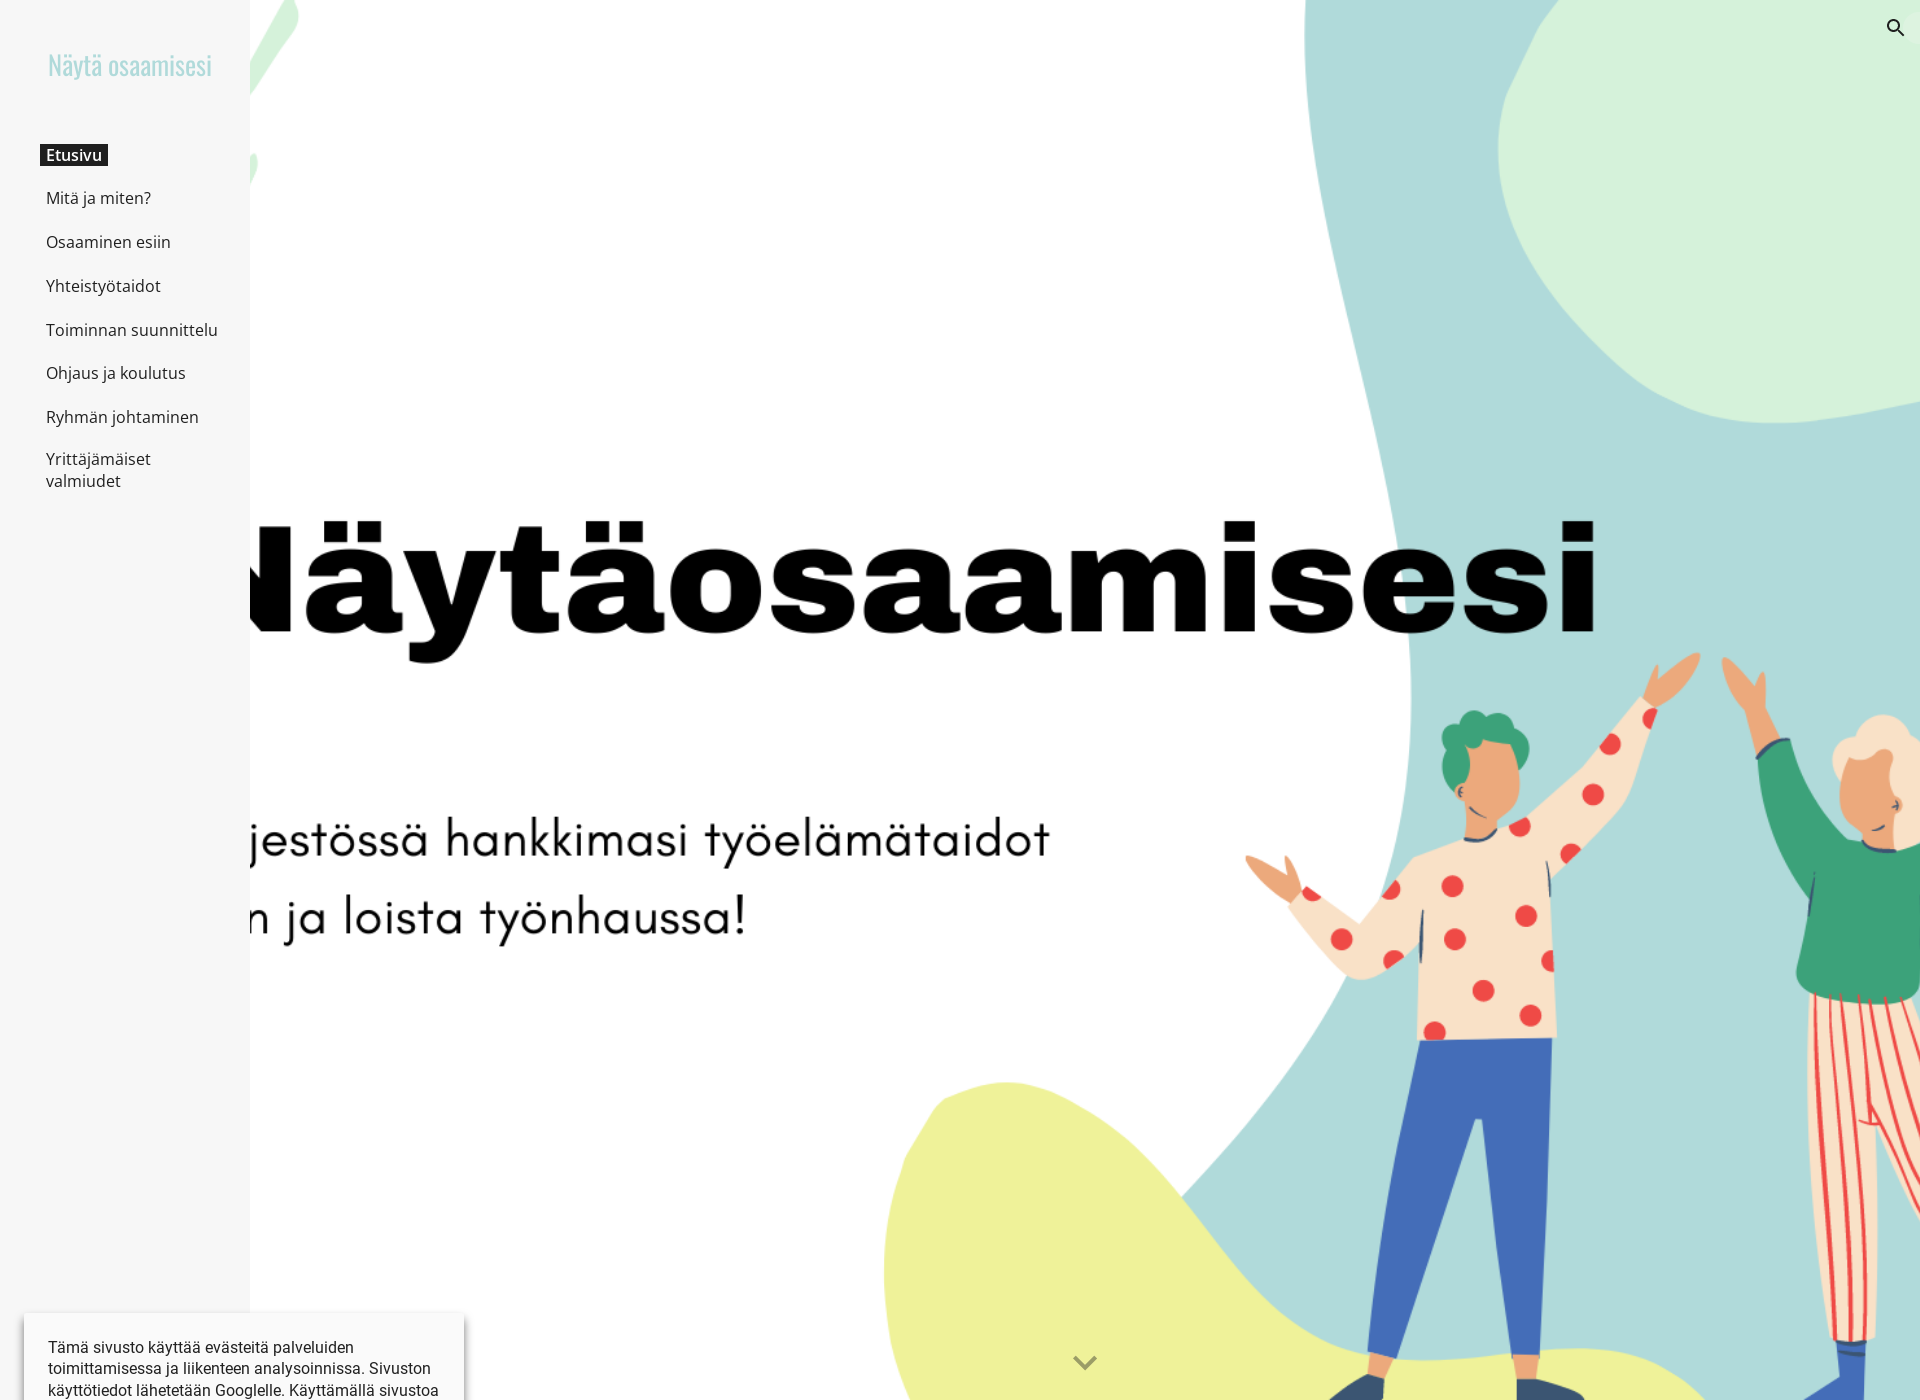 Skärmdump för näytäosaamisesi.fi